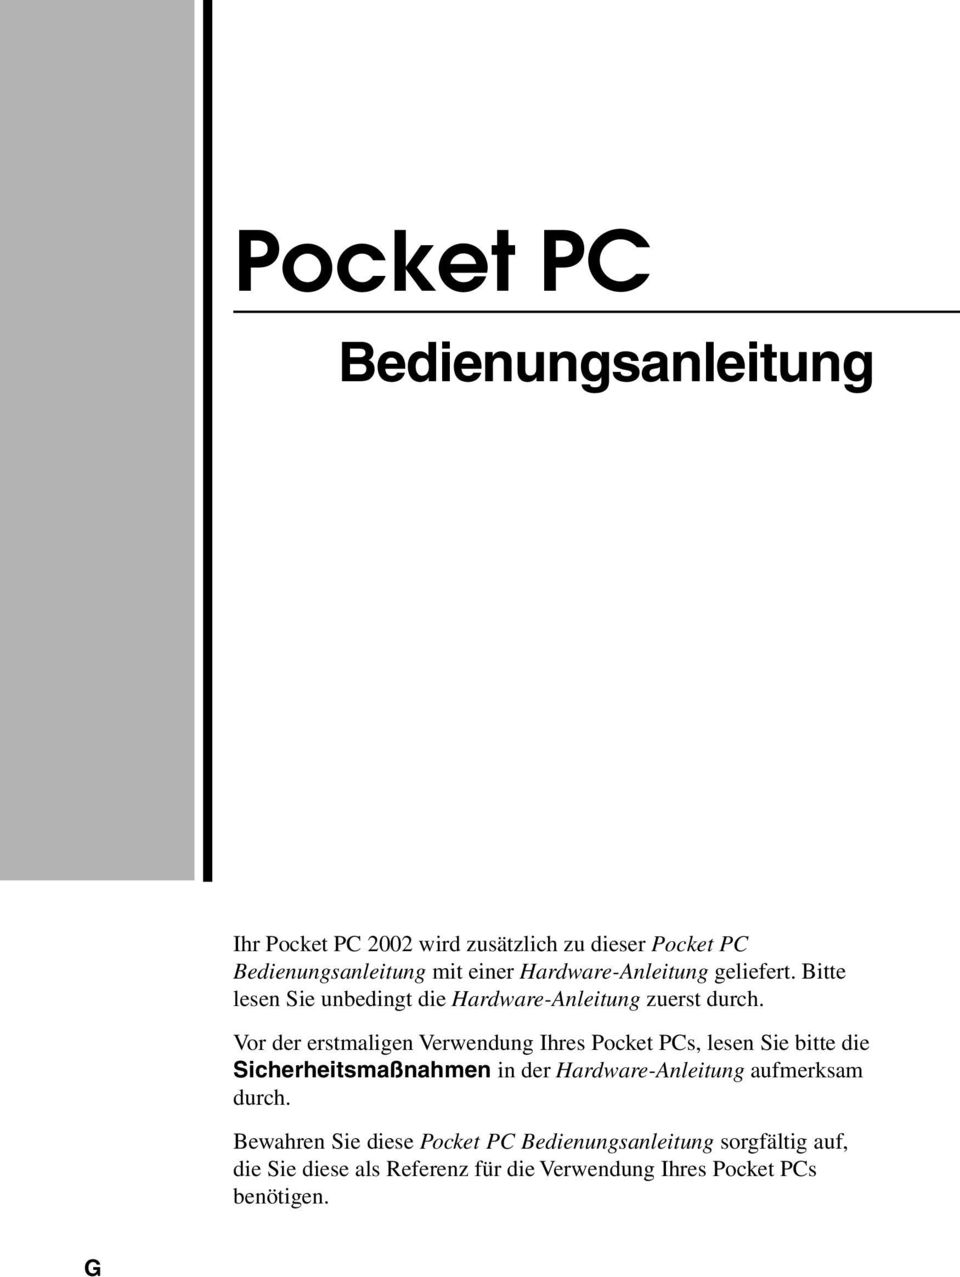 Vor der erstmaligen Verwendung Ihres Pocket PCs, lesen Sie bitte die Sicherheitsmaßnahmen in der Hardware-Anleitung